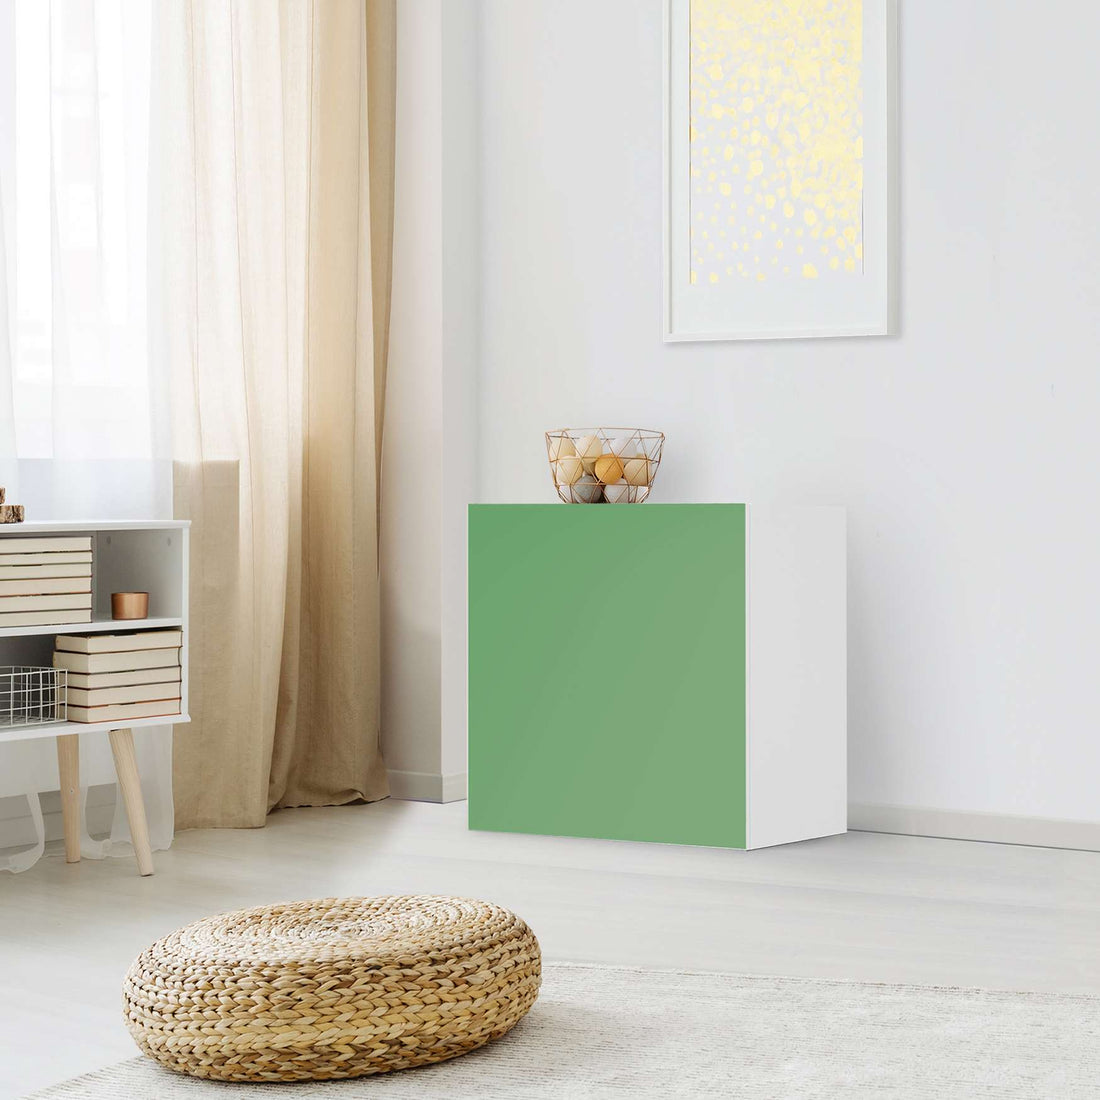 Klebefolie für Möbel Grün Light - IKEA Besta Regal 1 Türe - Wohnzimmer